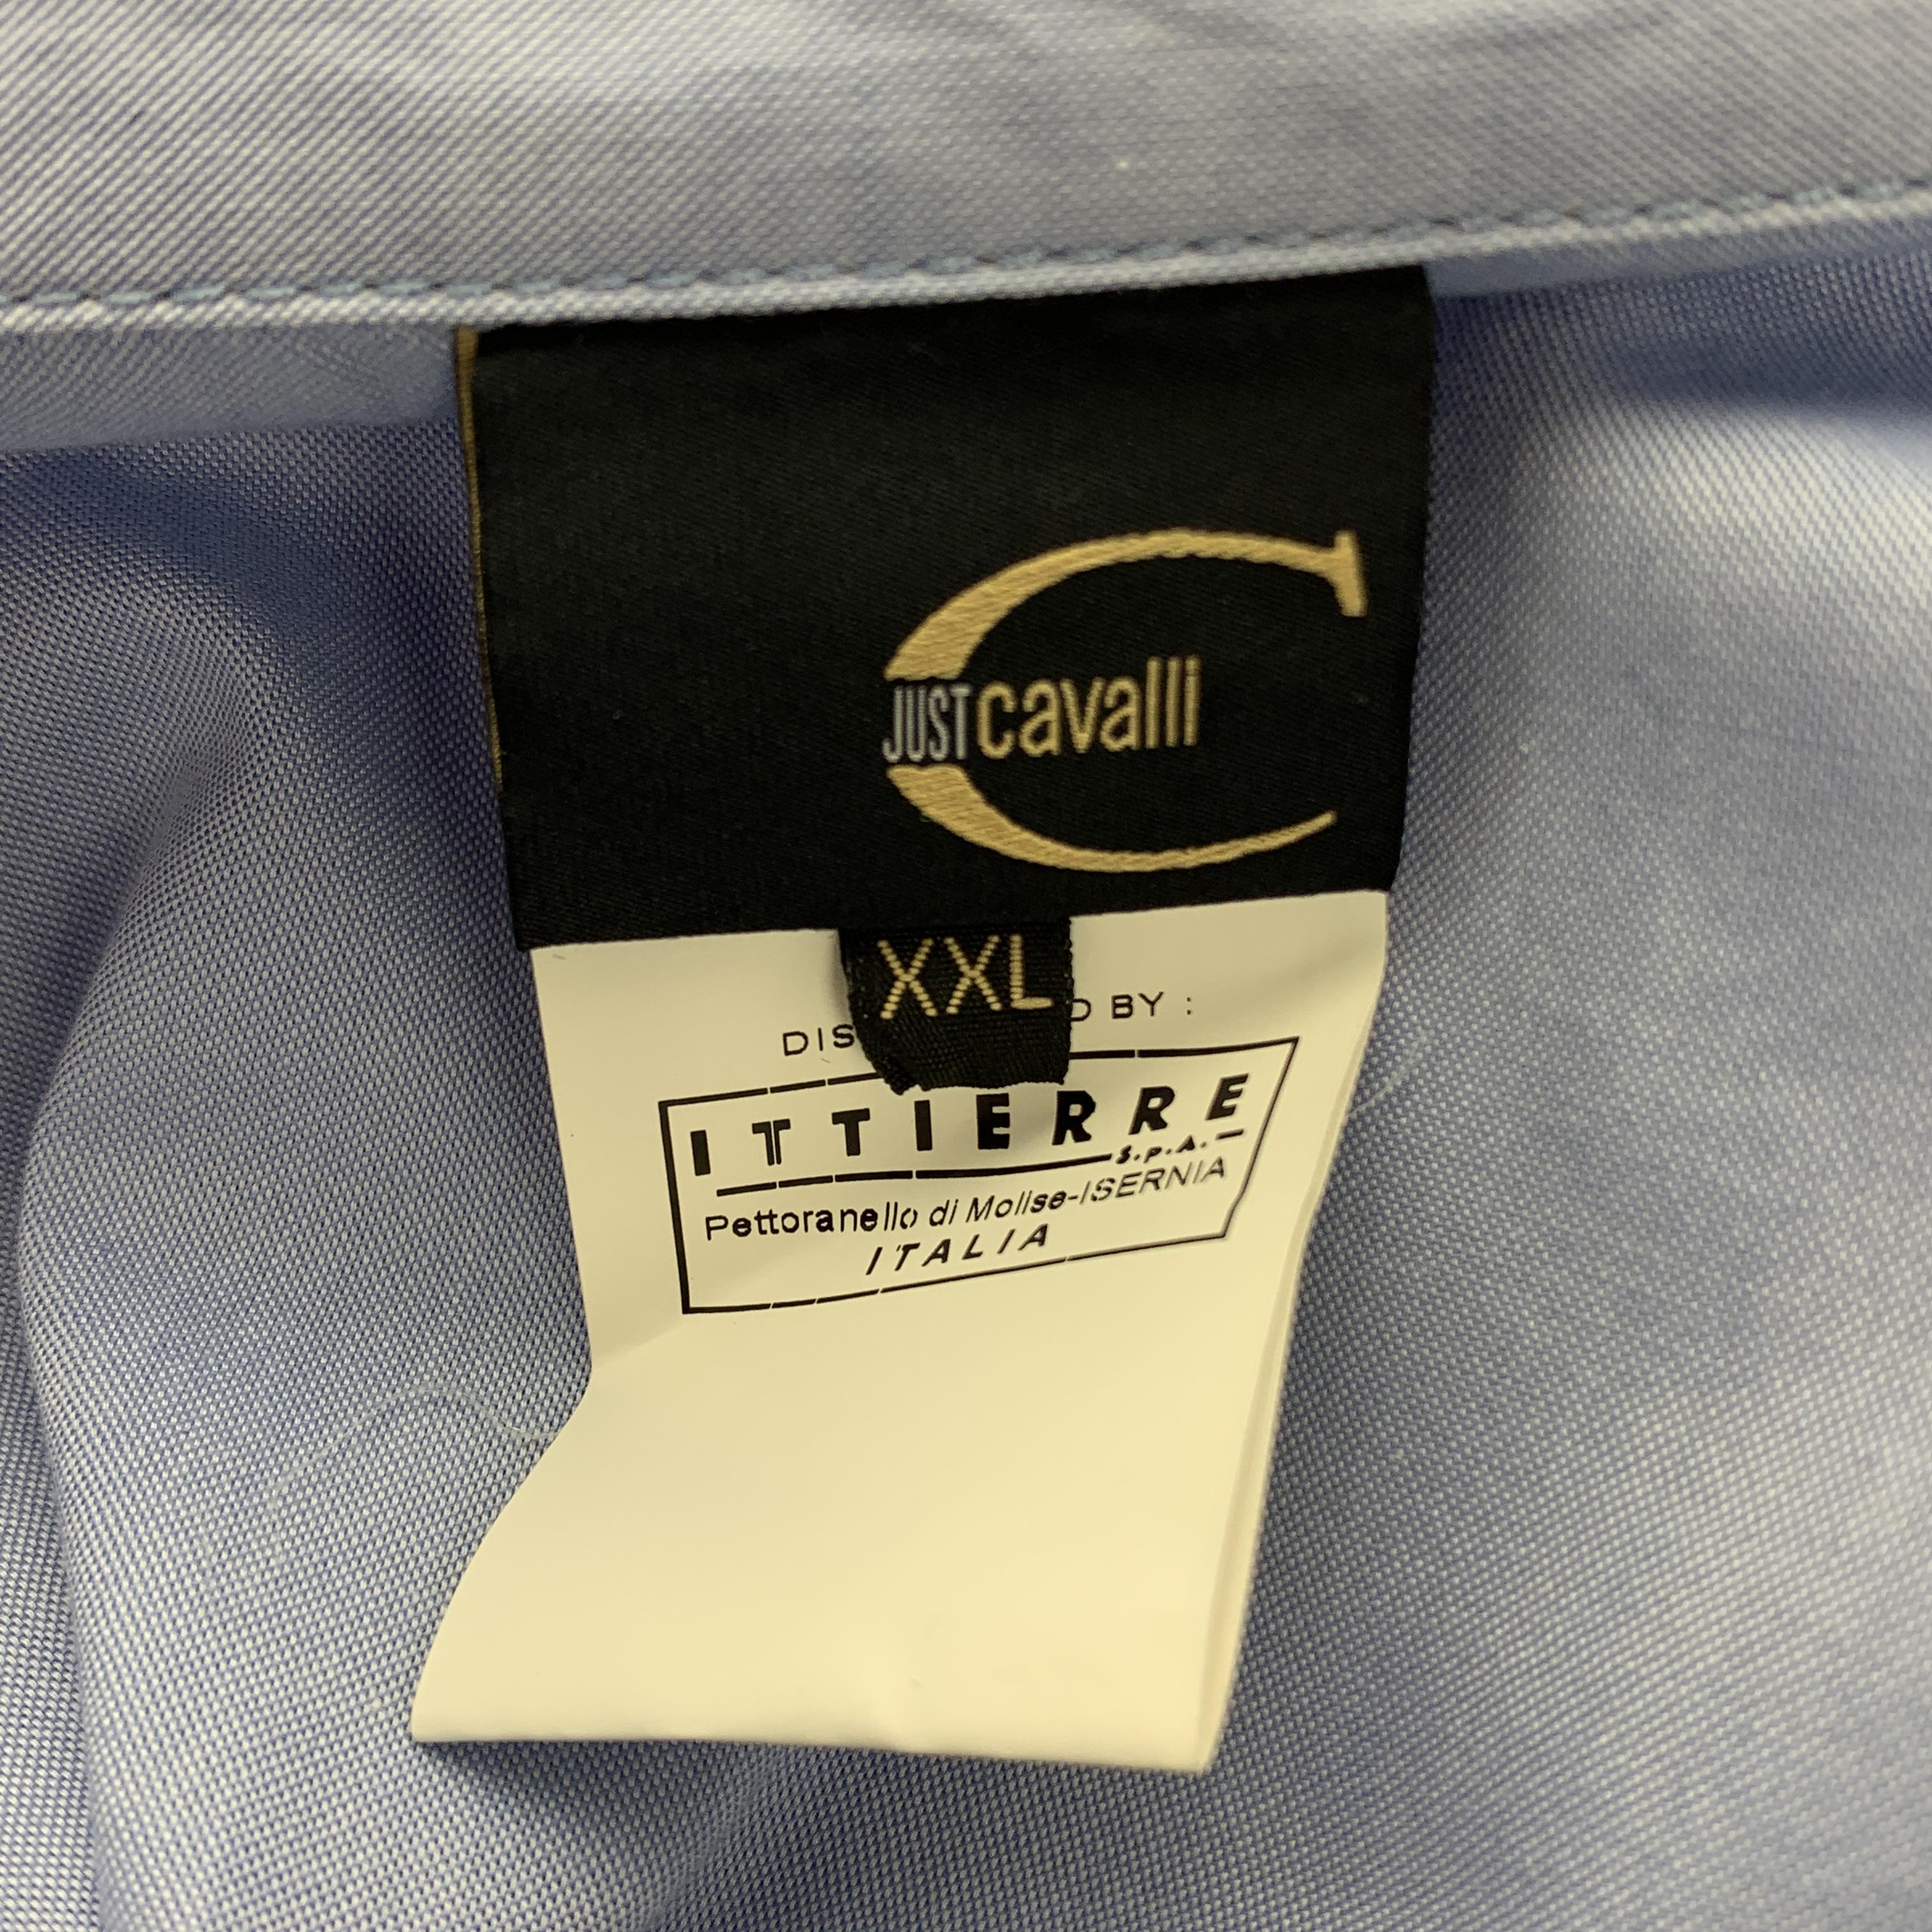 Men's  FLORAL PRINT DRESS SHIRT NEW JUST CAVALLI Size XXL Light Blue Glitter Shirt